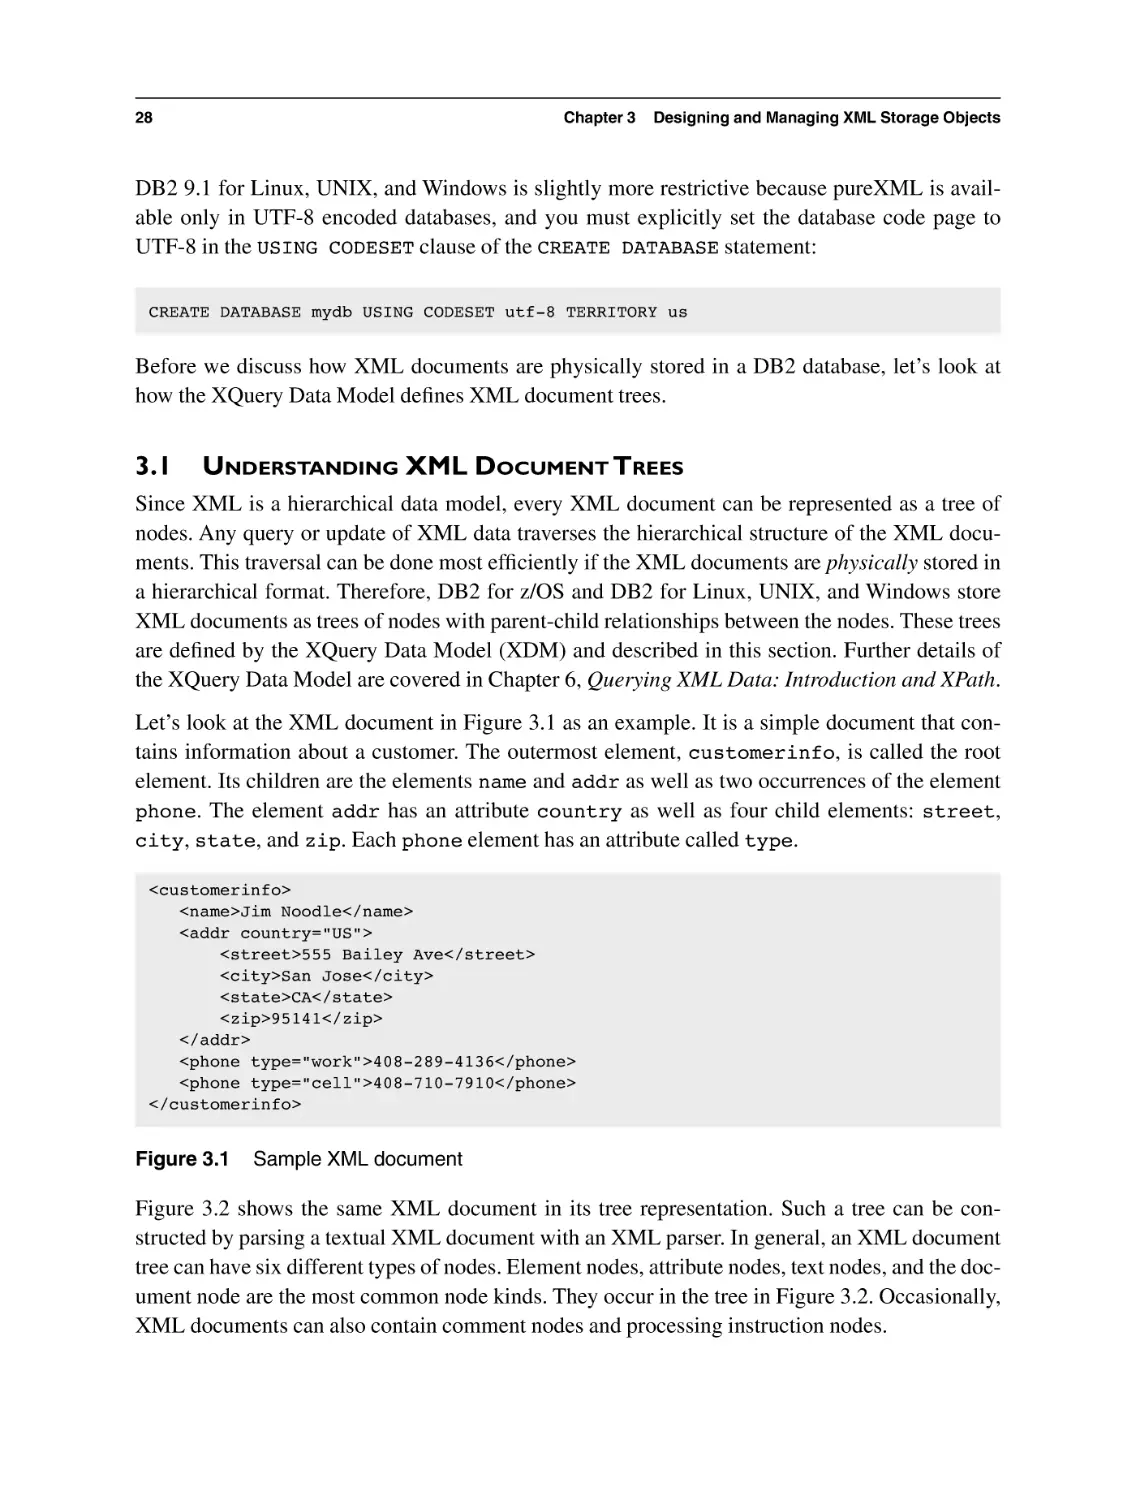 3.1 Understanding XML Document Trees